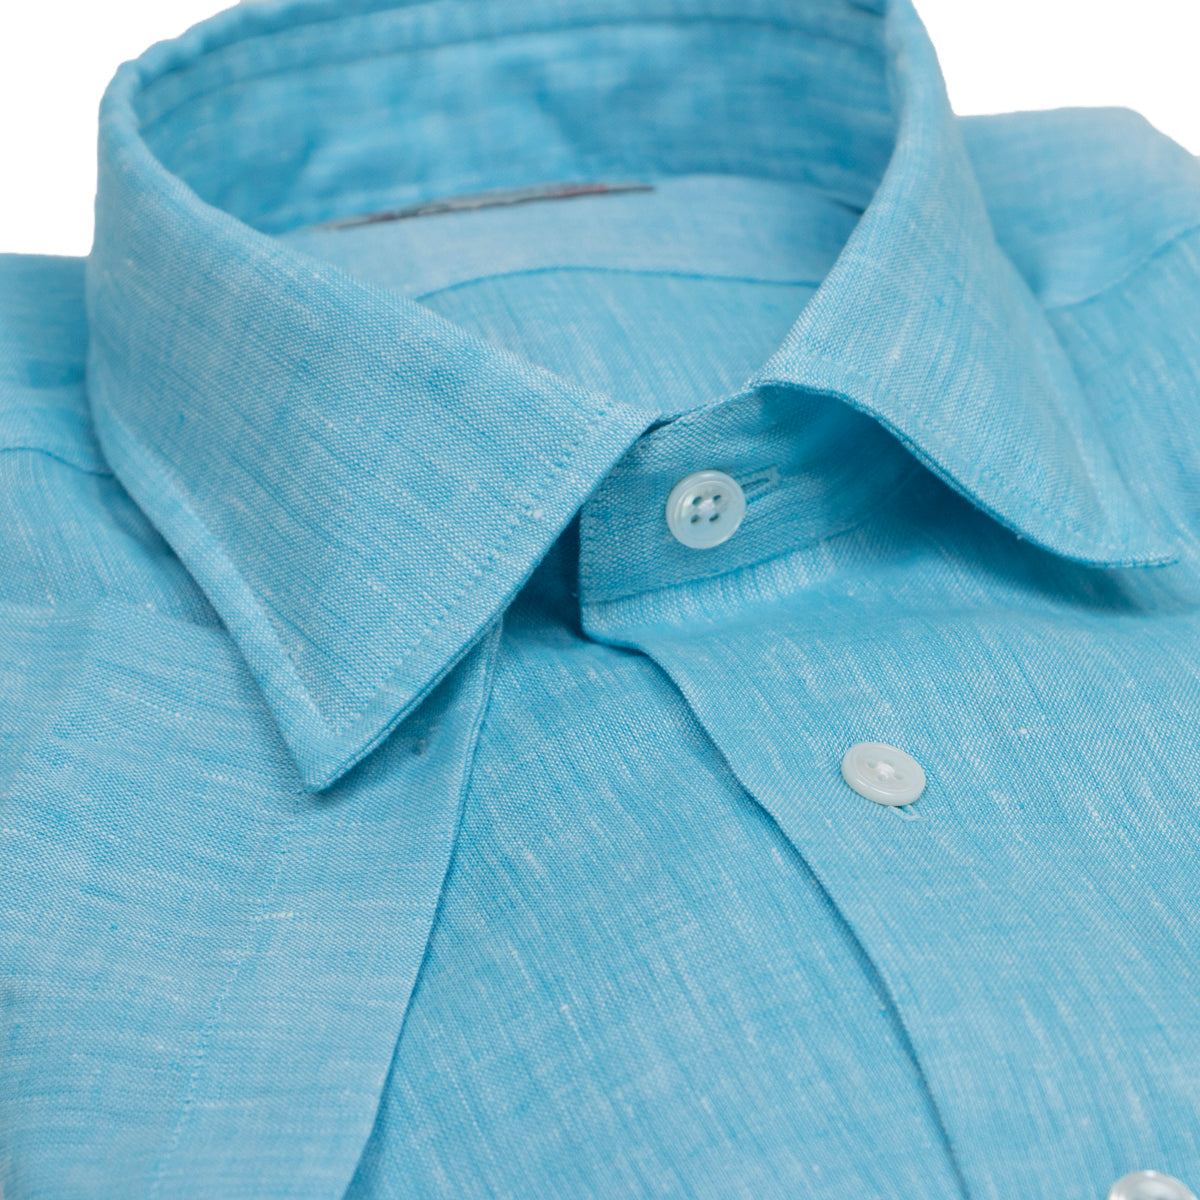 Aqua Blue Linen Short Sleeve Shirt  Robert Old   